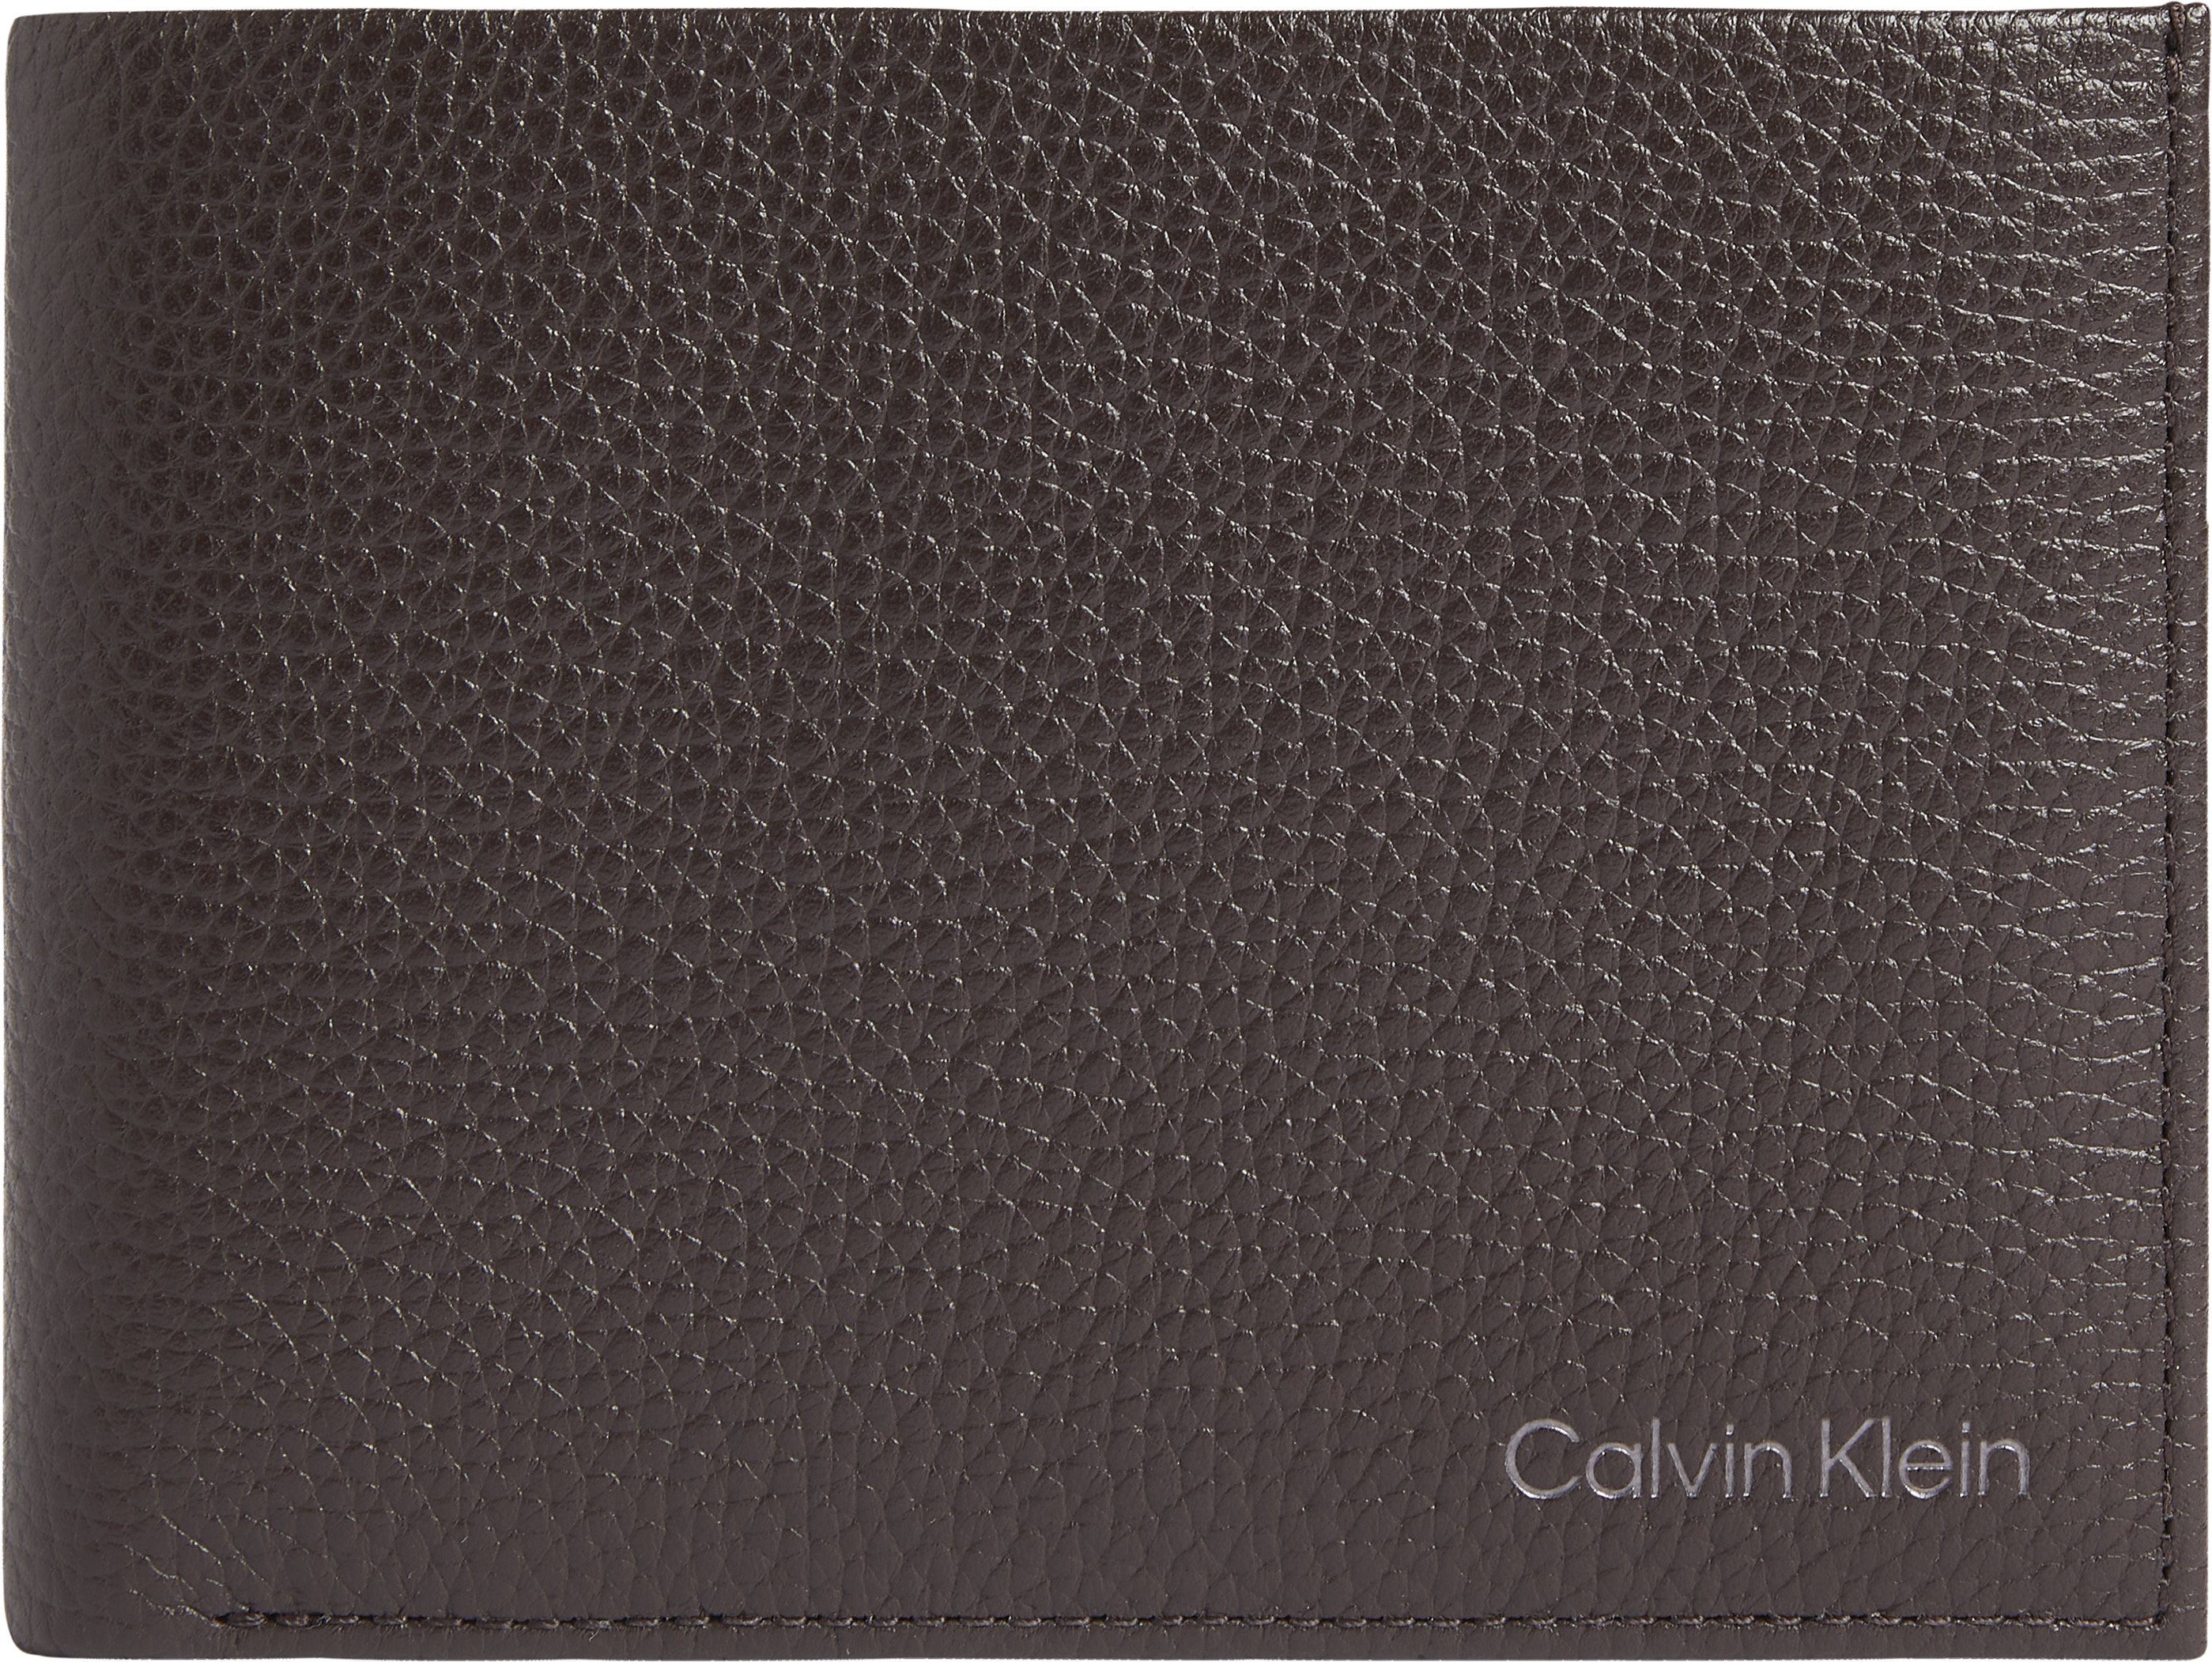 Calvin Klein Herren Geldbörsen online kaufen | OTTO